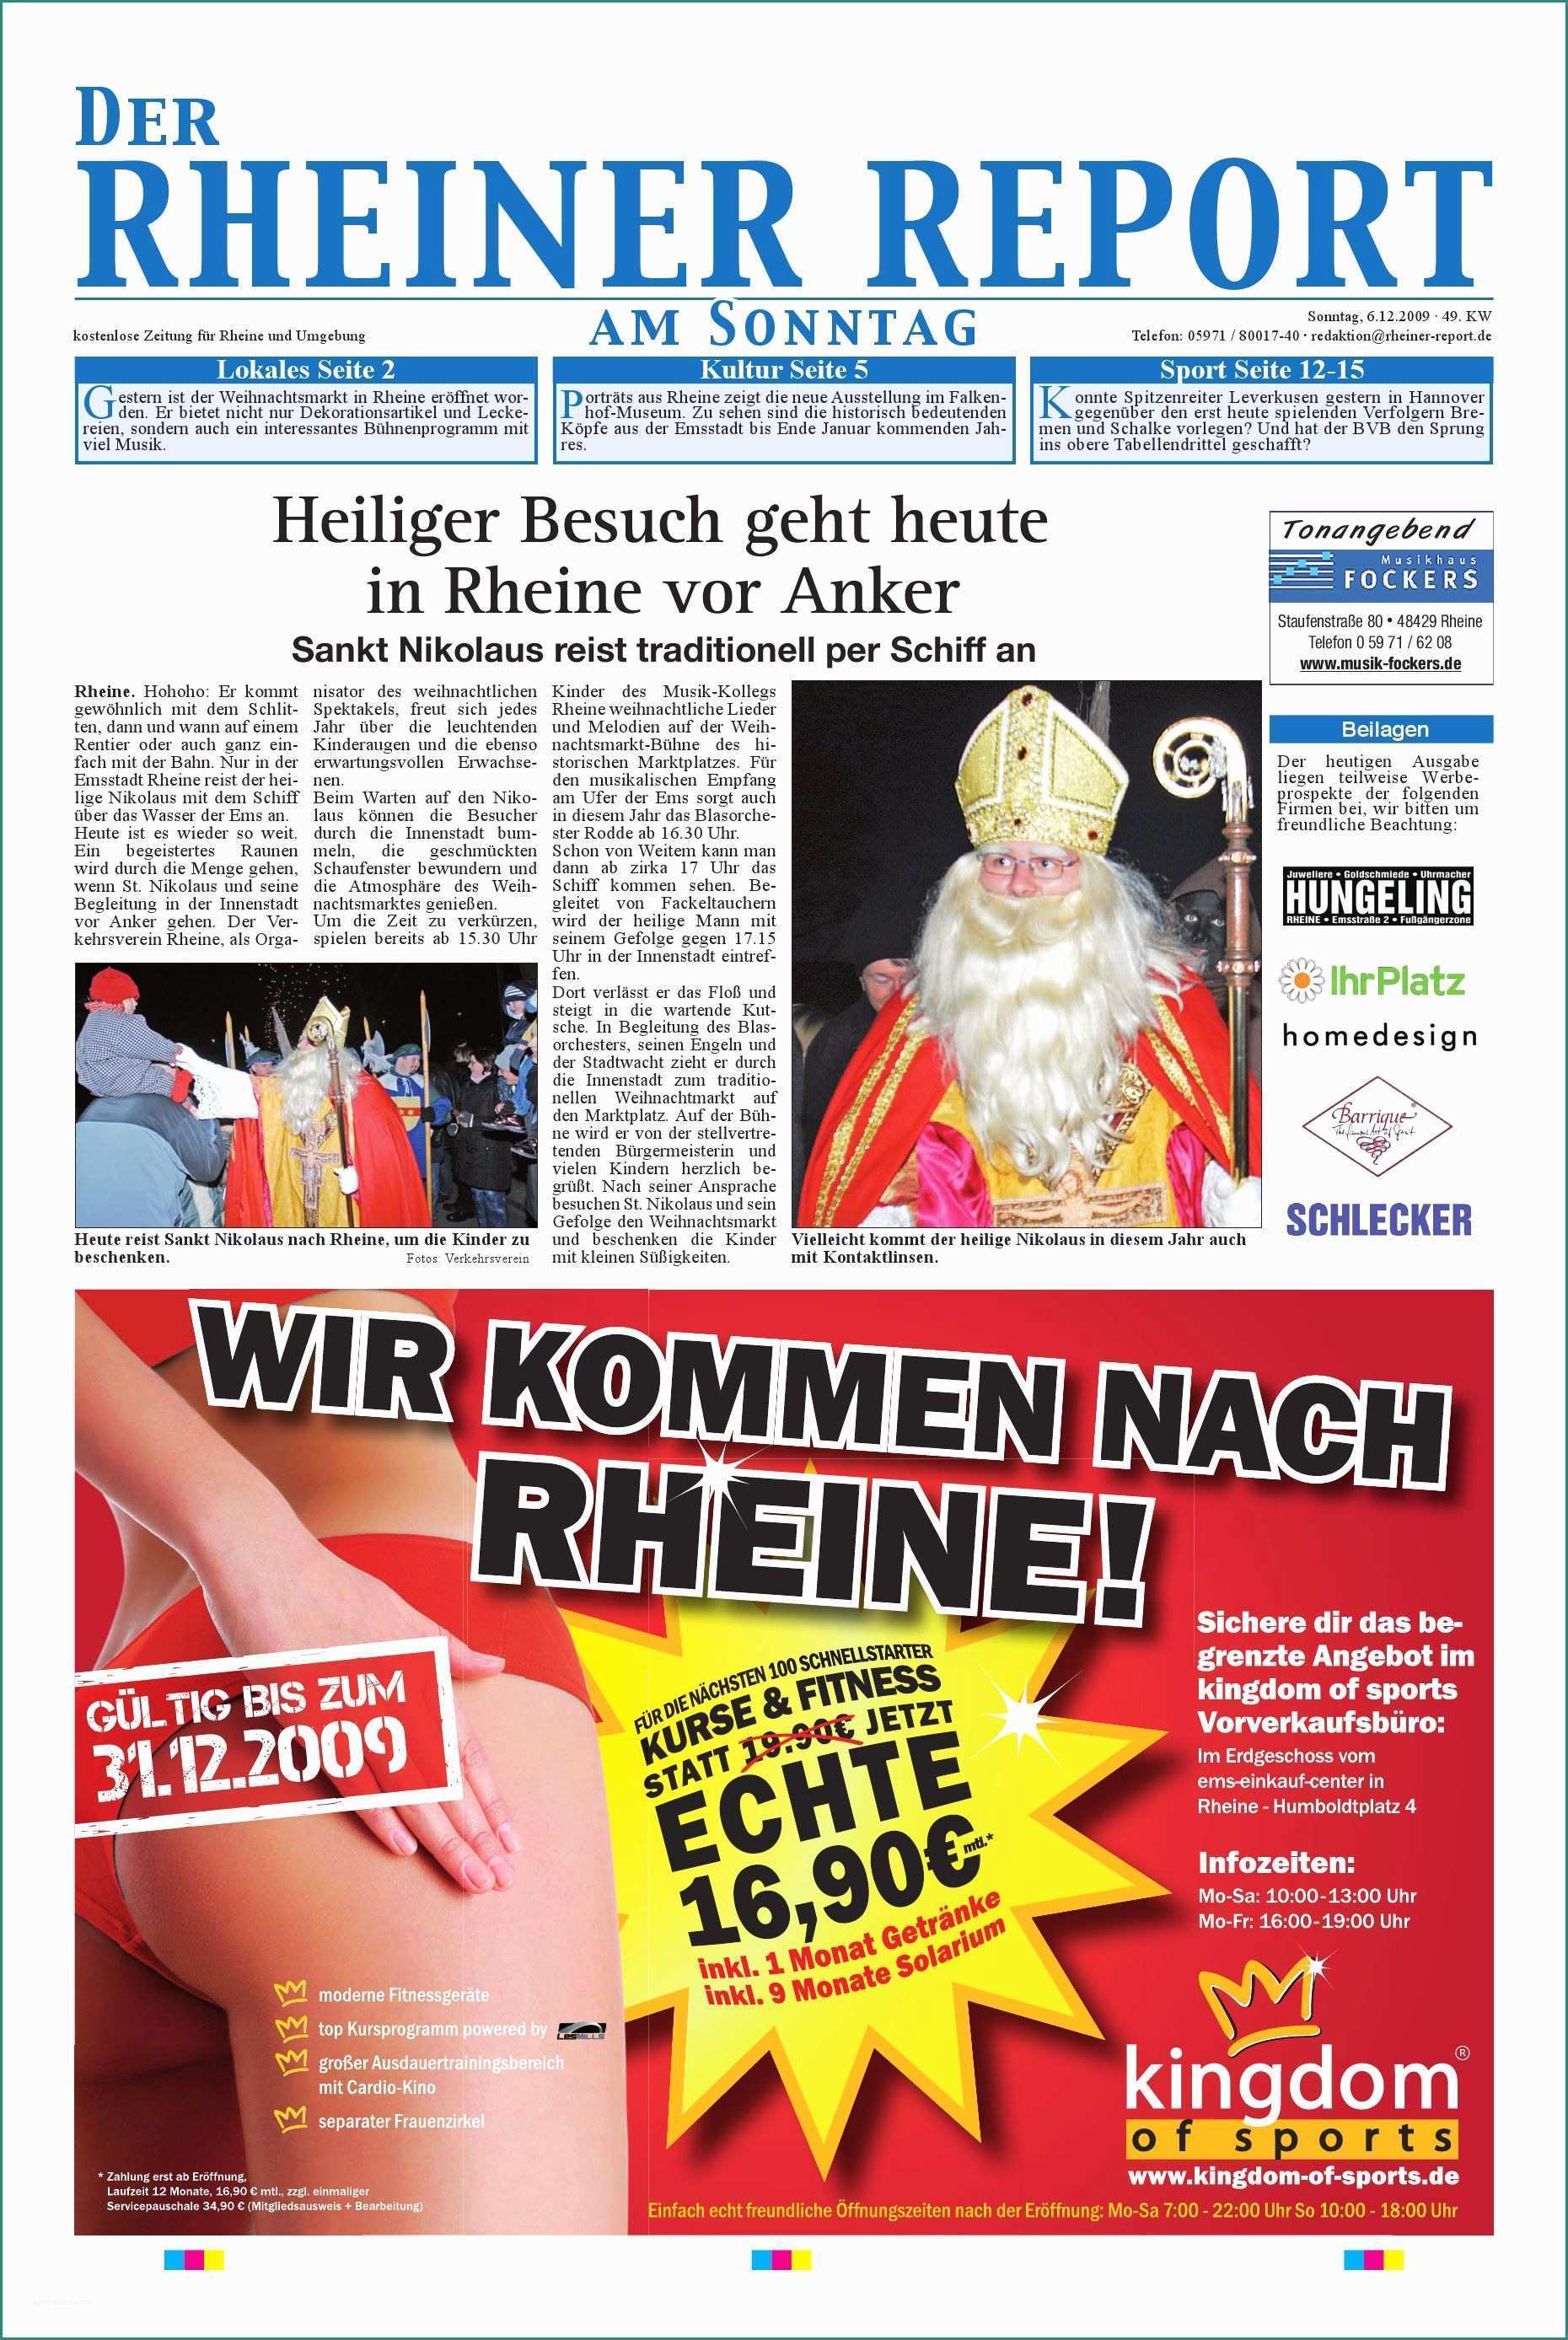 Prezzo Rame Usato Al Kg E Der Rheiner Report Kw 49 by Rheiner Report Gmbh issuu